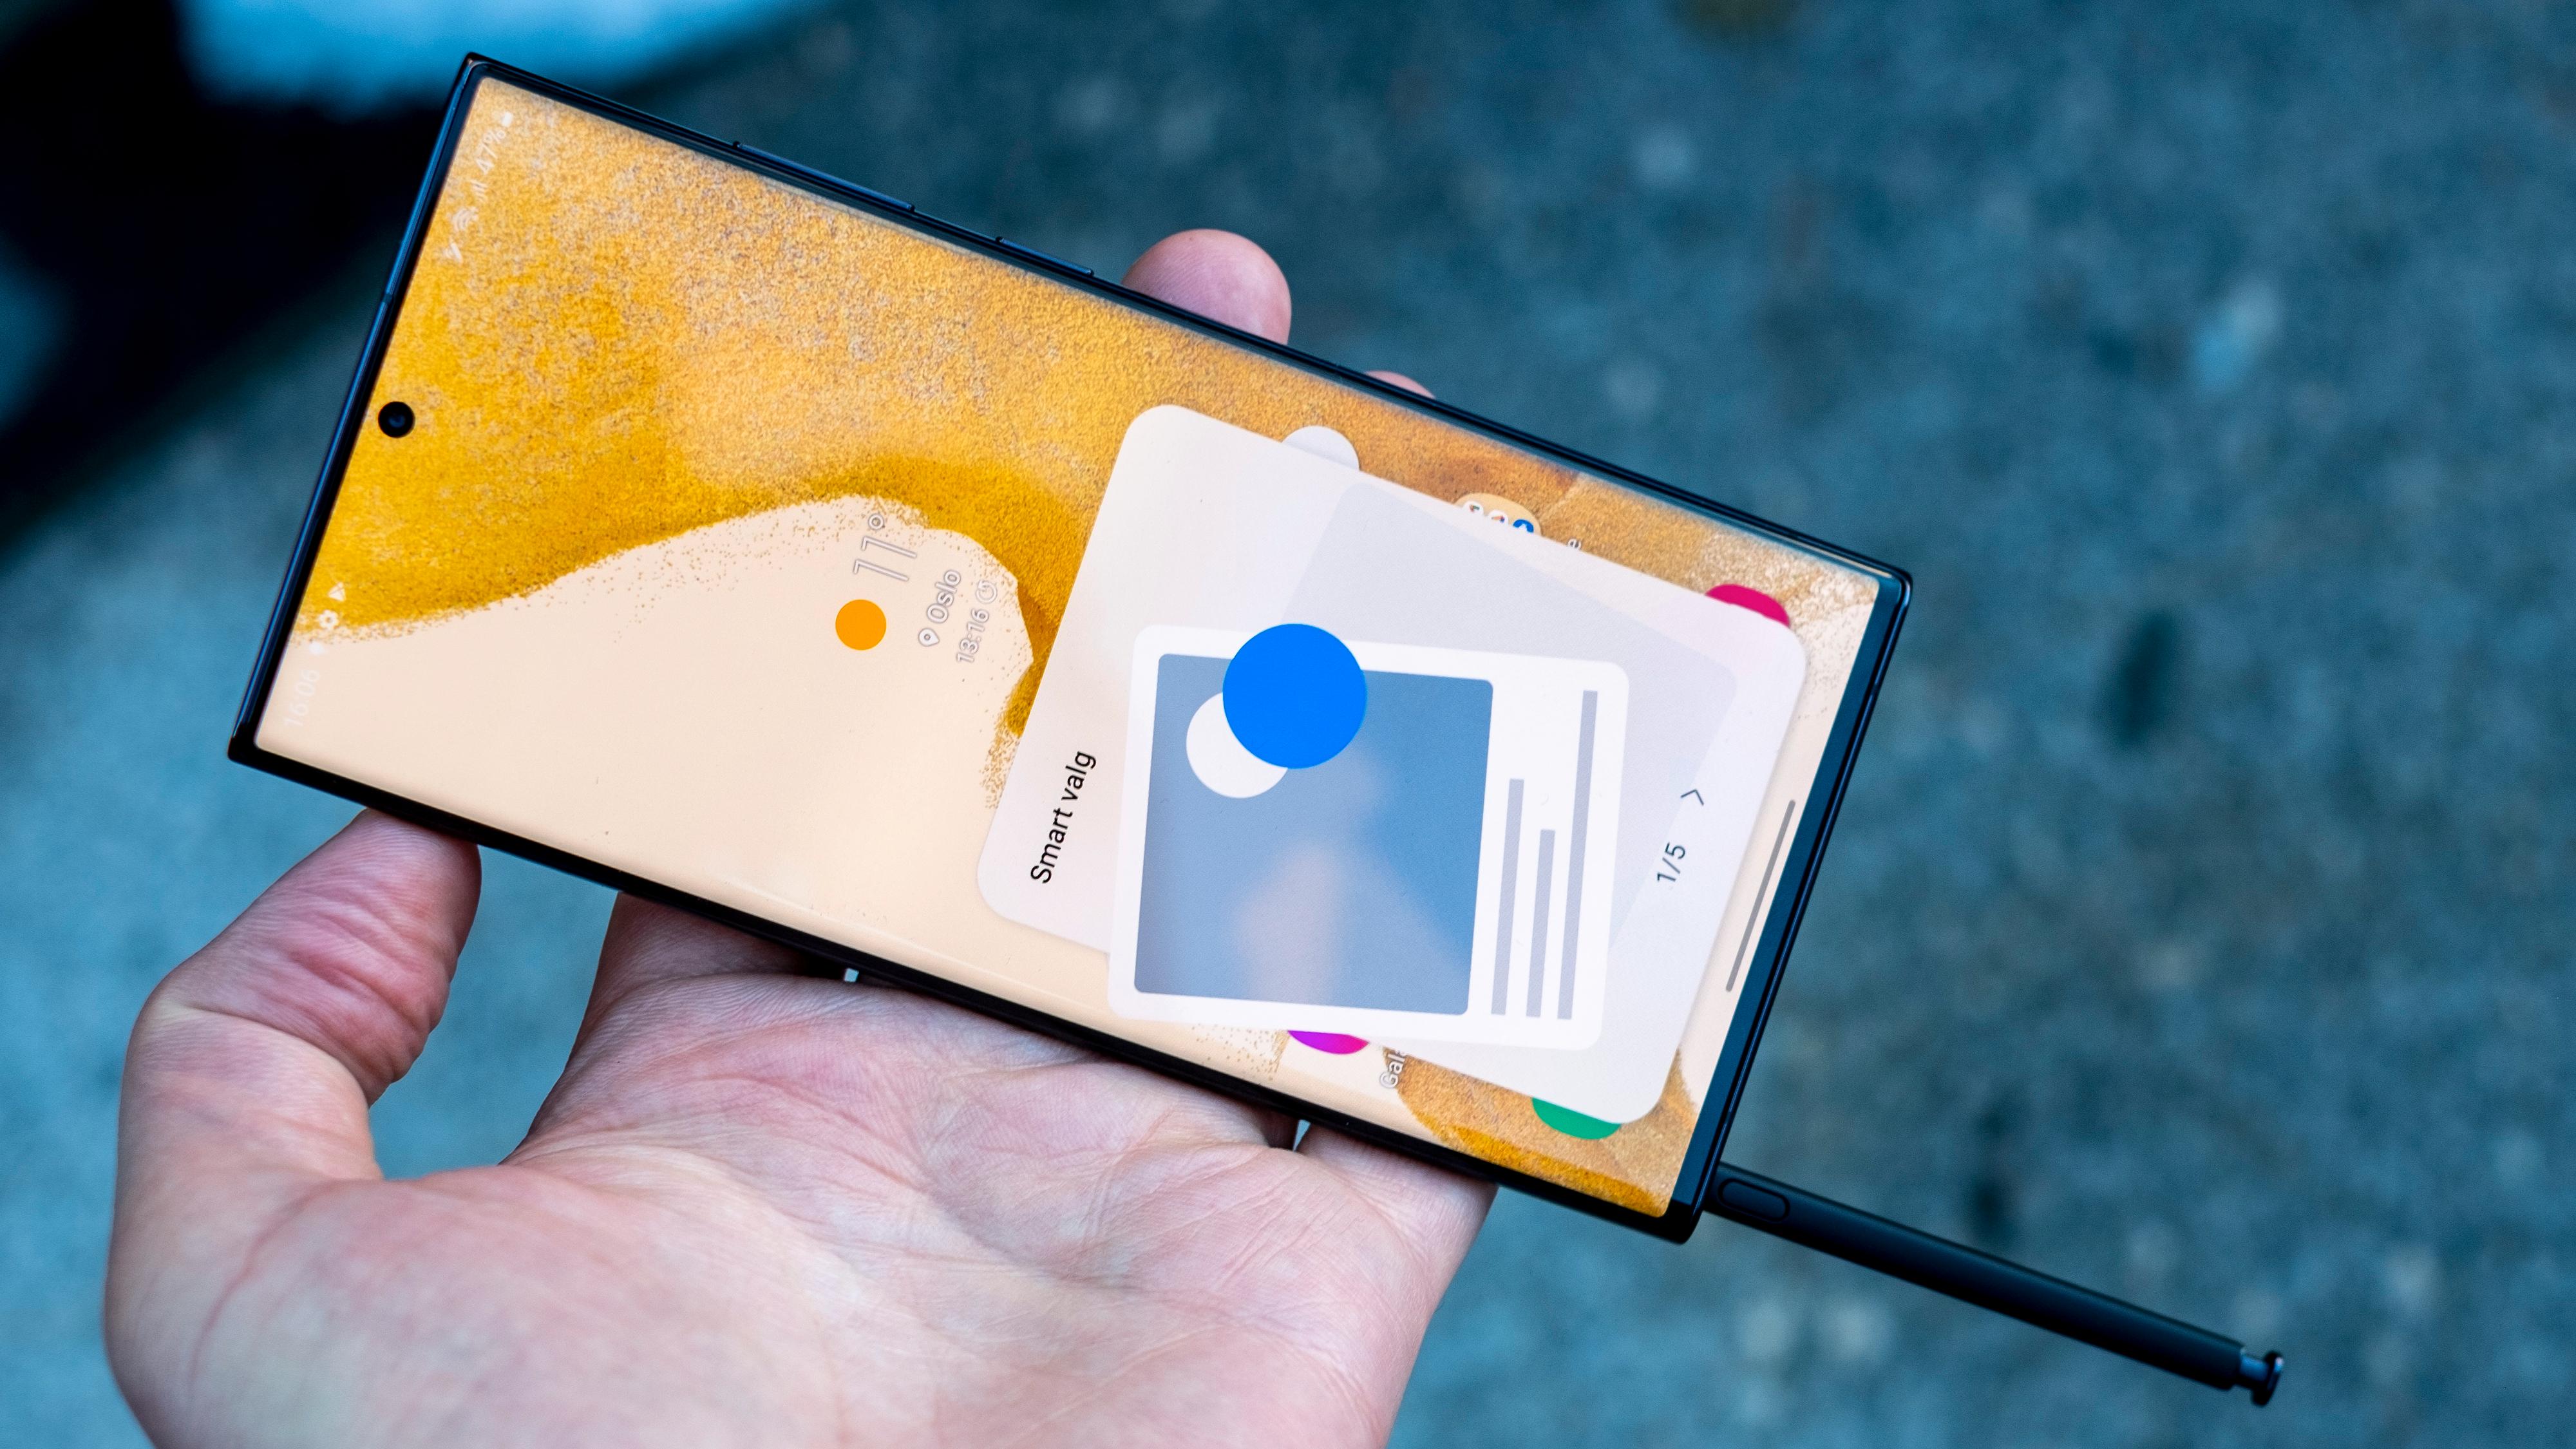 S22 Ultra er den første Galaxy S-telefonen innebygget digital penn, slik Galaxy Note-modellene pleide å ha.